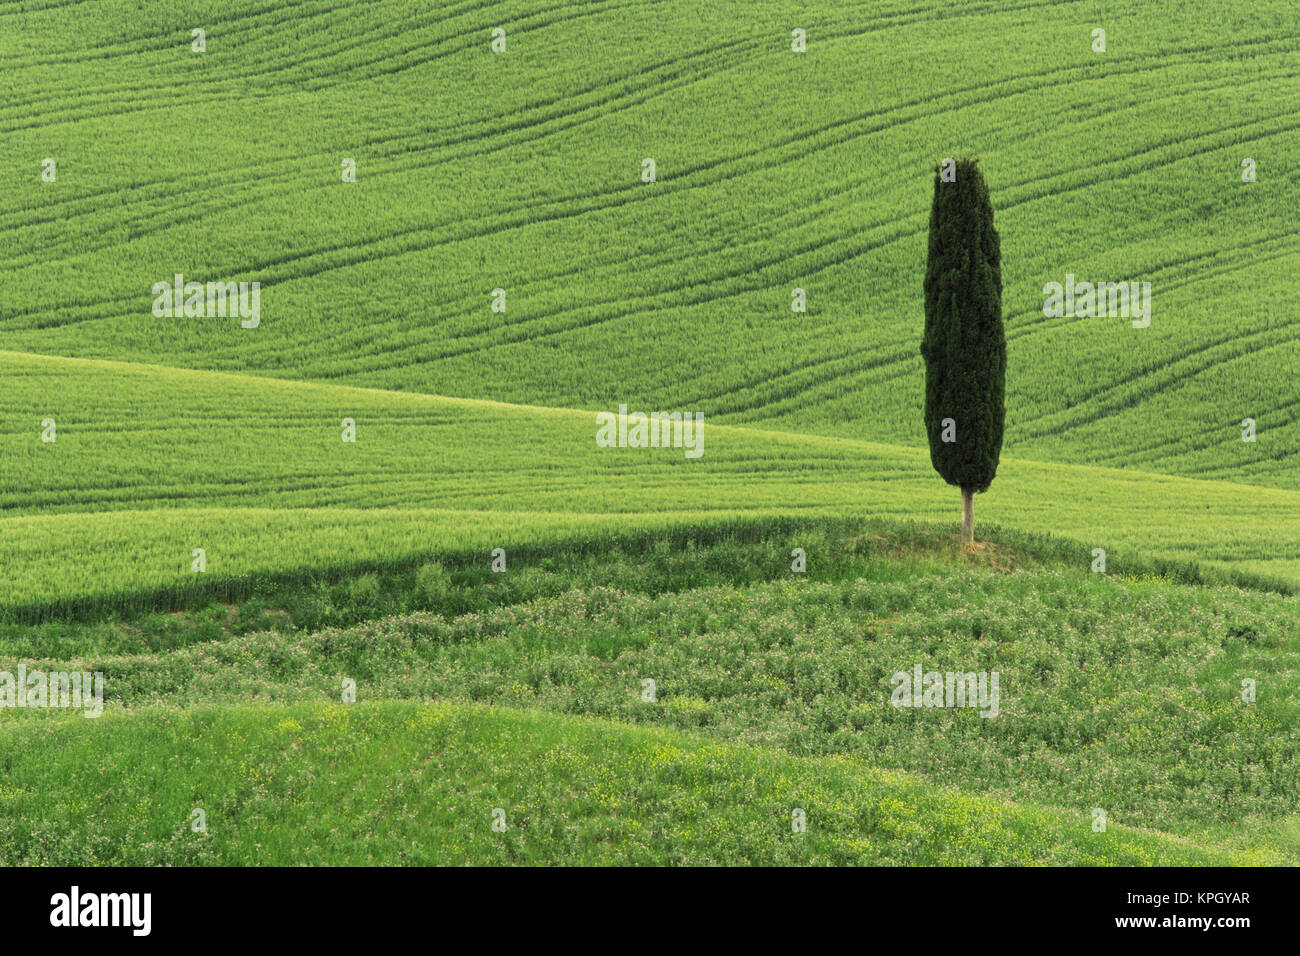 Wheat field and single cypress tree, Tuscany region of Italy Stock Photo